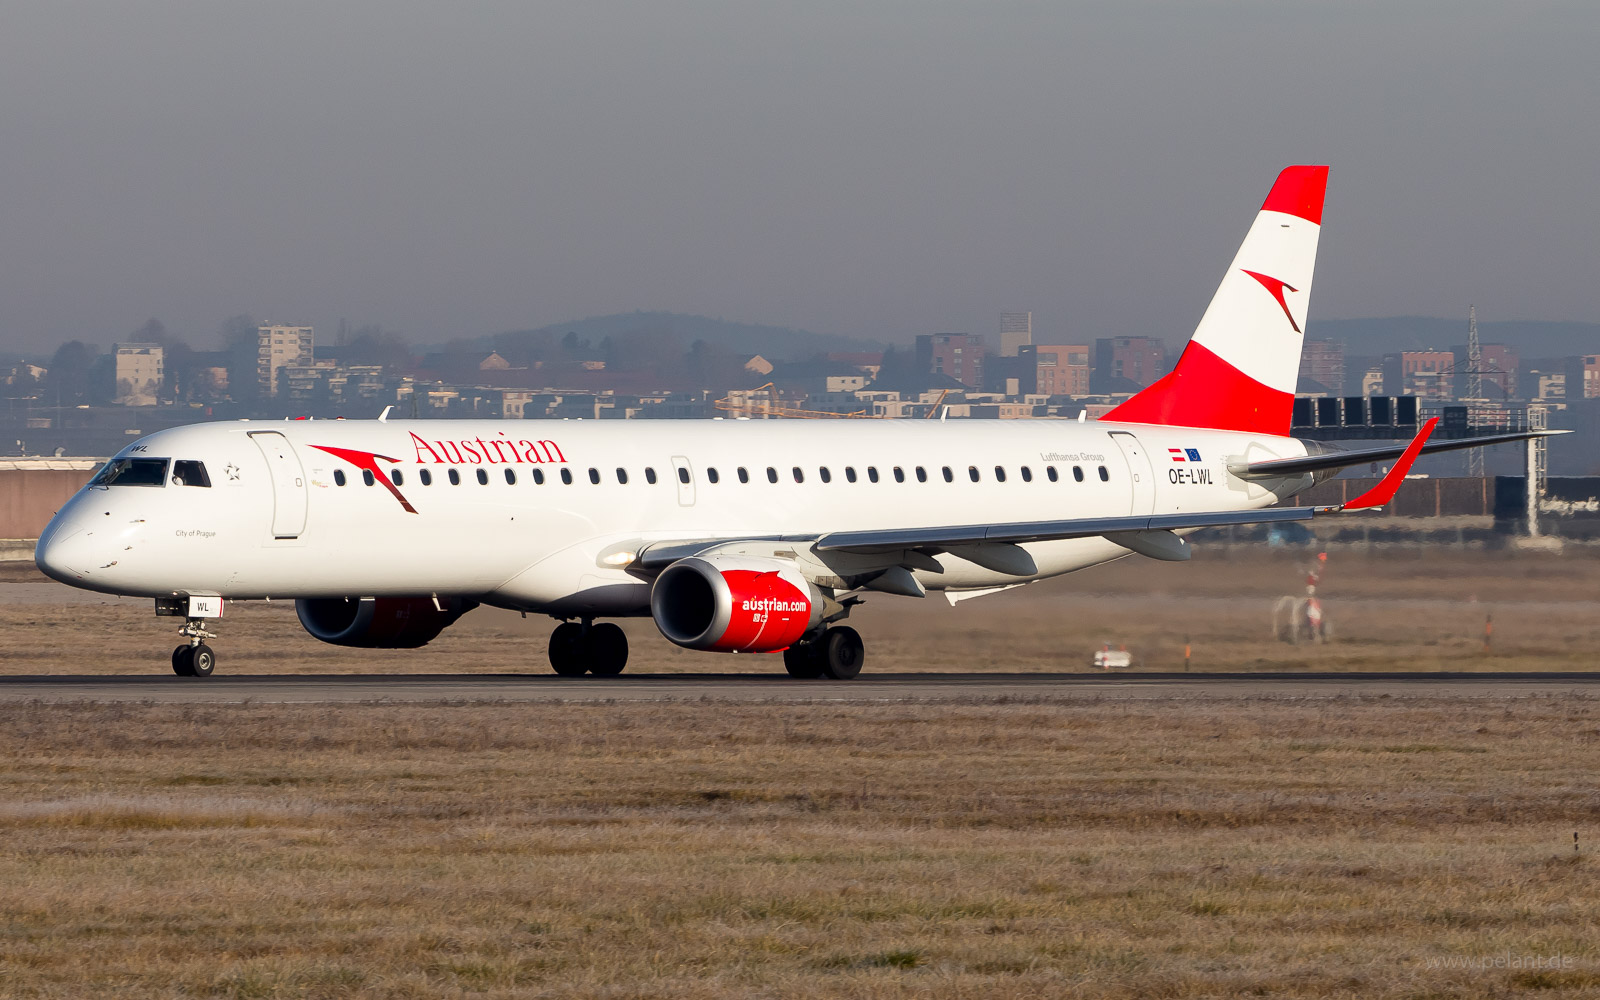 OE-LWL Austrian Airlines Embraer ERJ-195LR in Stuttgart / STR